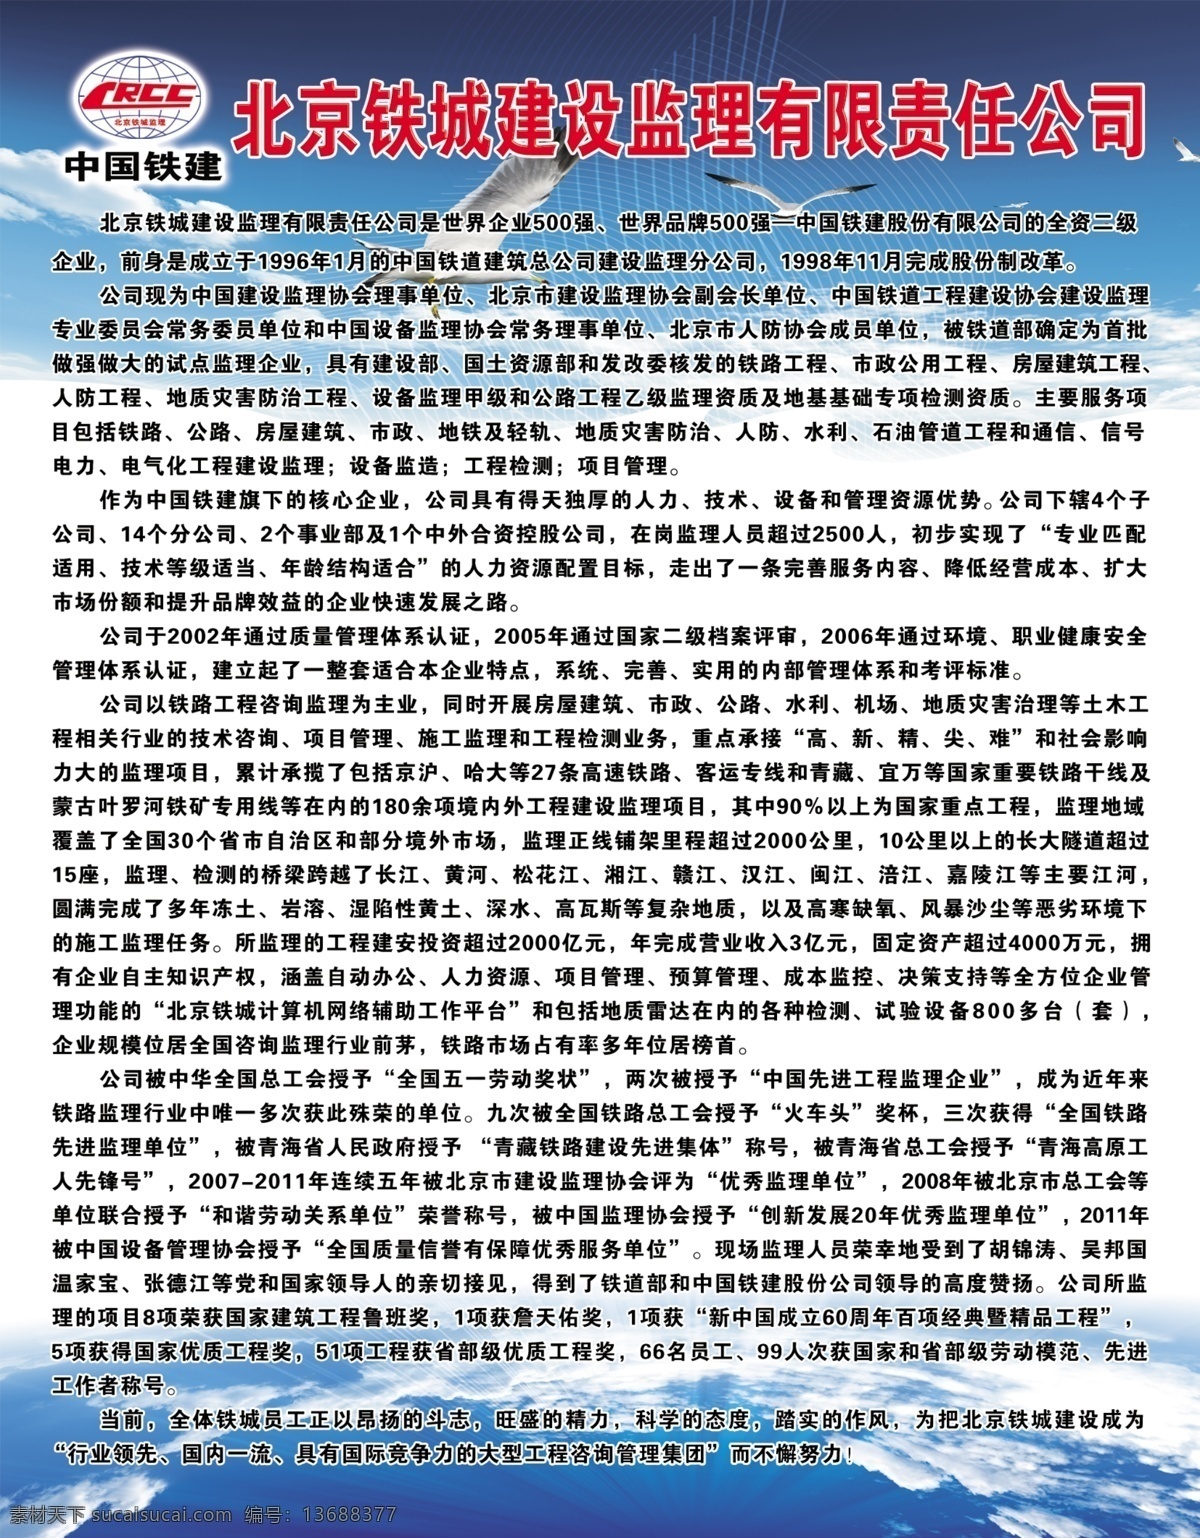 公司介绍展板 蓝天白云 地球 大海 海鸥 光芒 网格 中国铁建标志 展板模板 广告设计模板 源文件